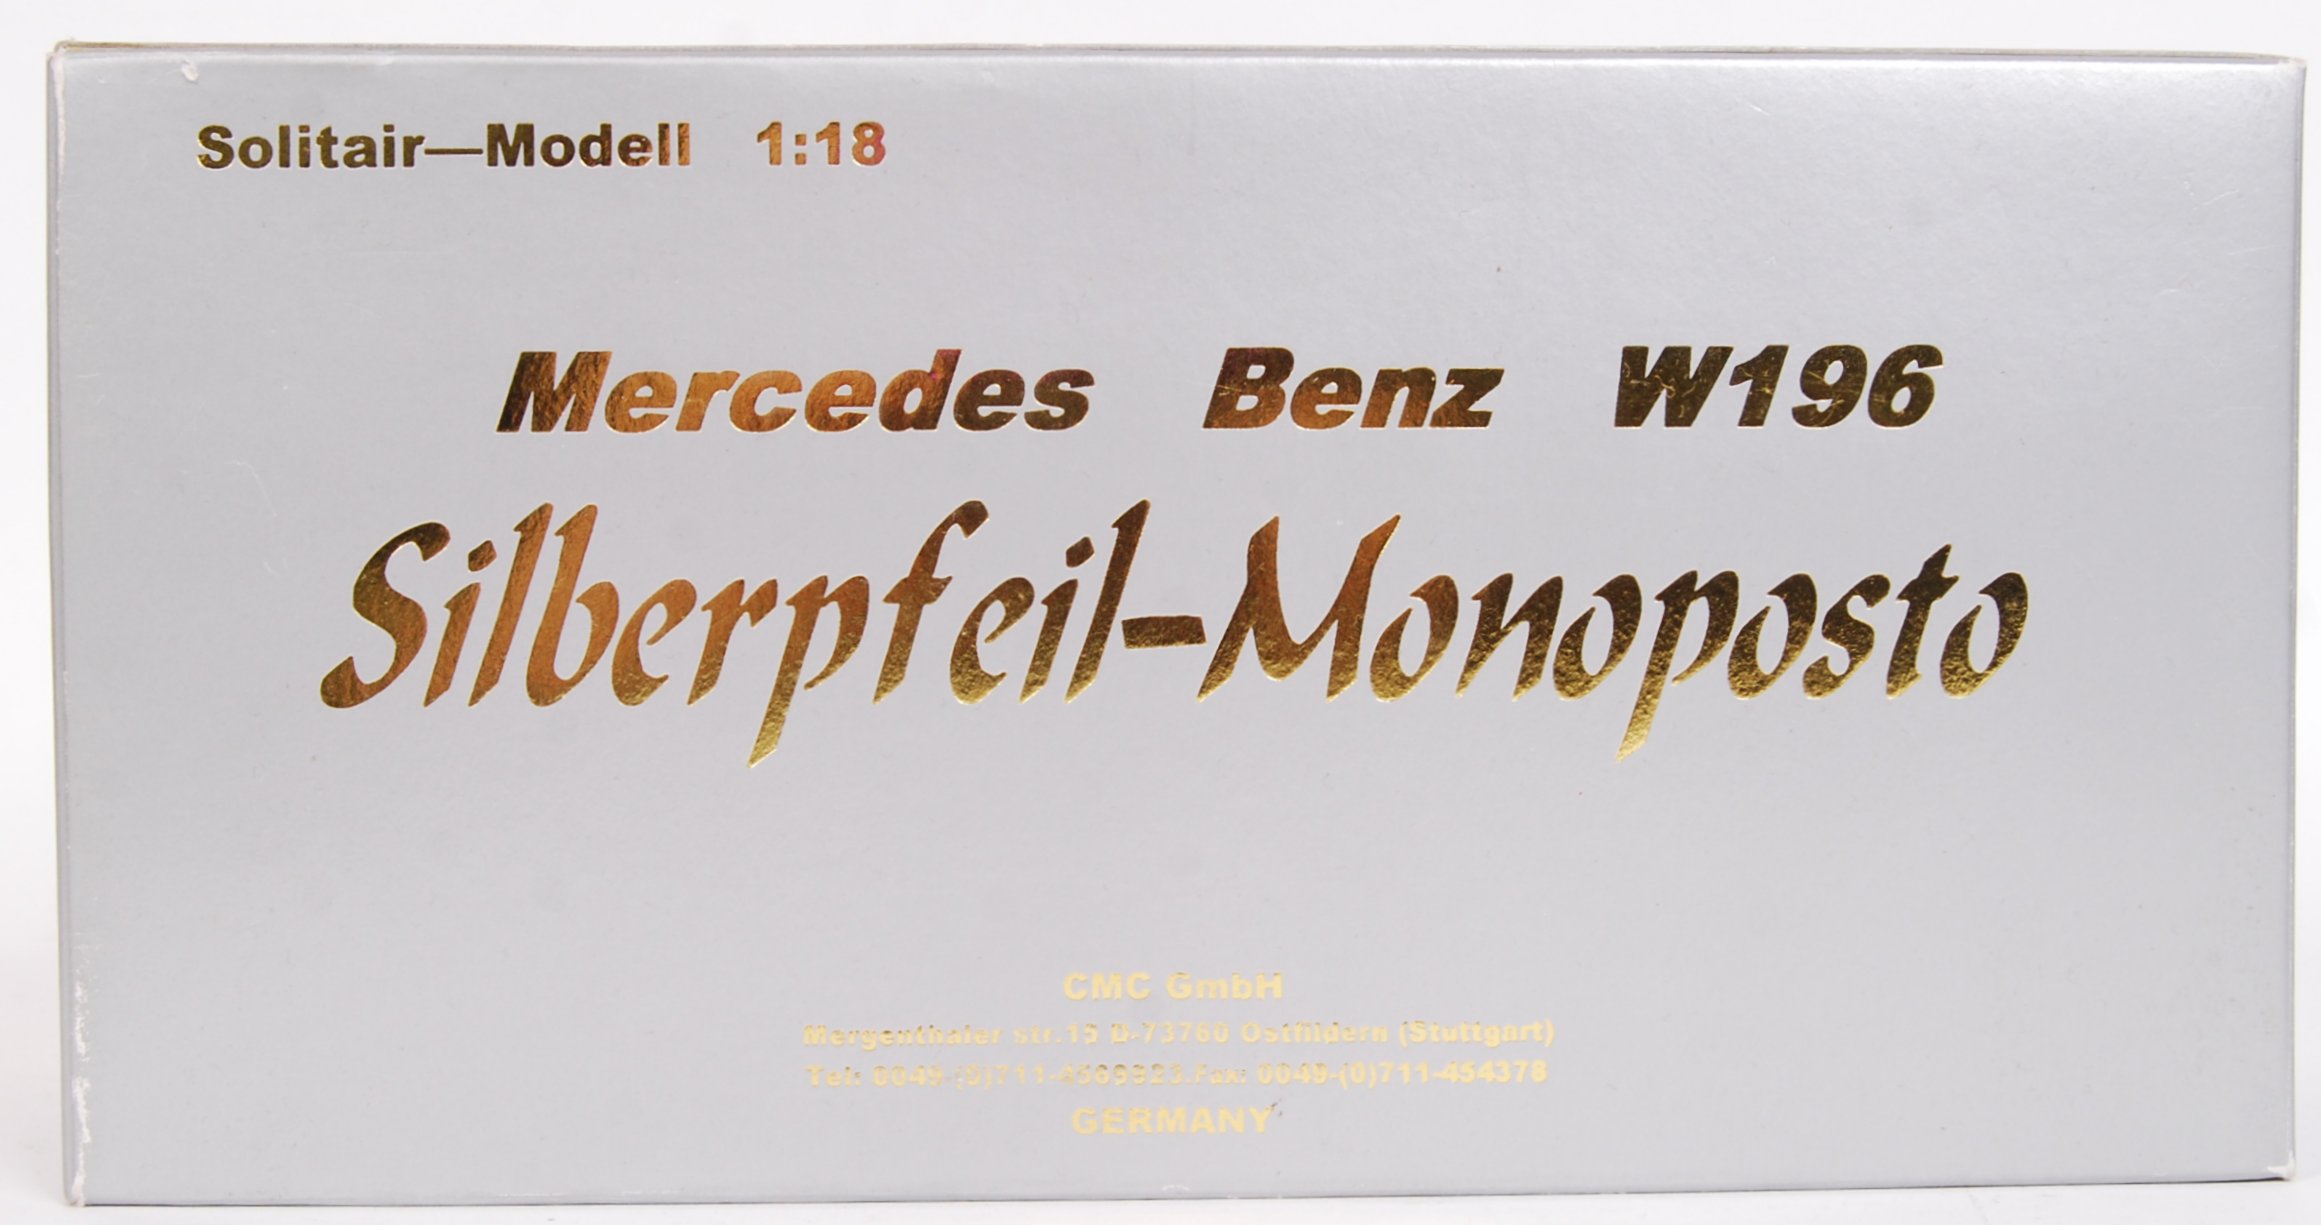 CMC MODELS SOLITAIR MODEL MERCEDES BENZ W196